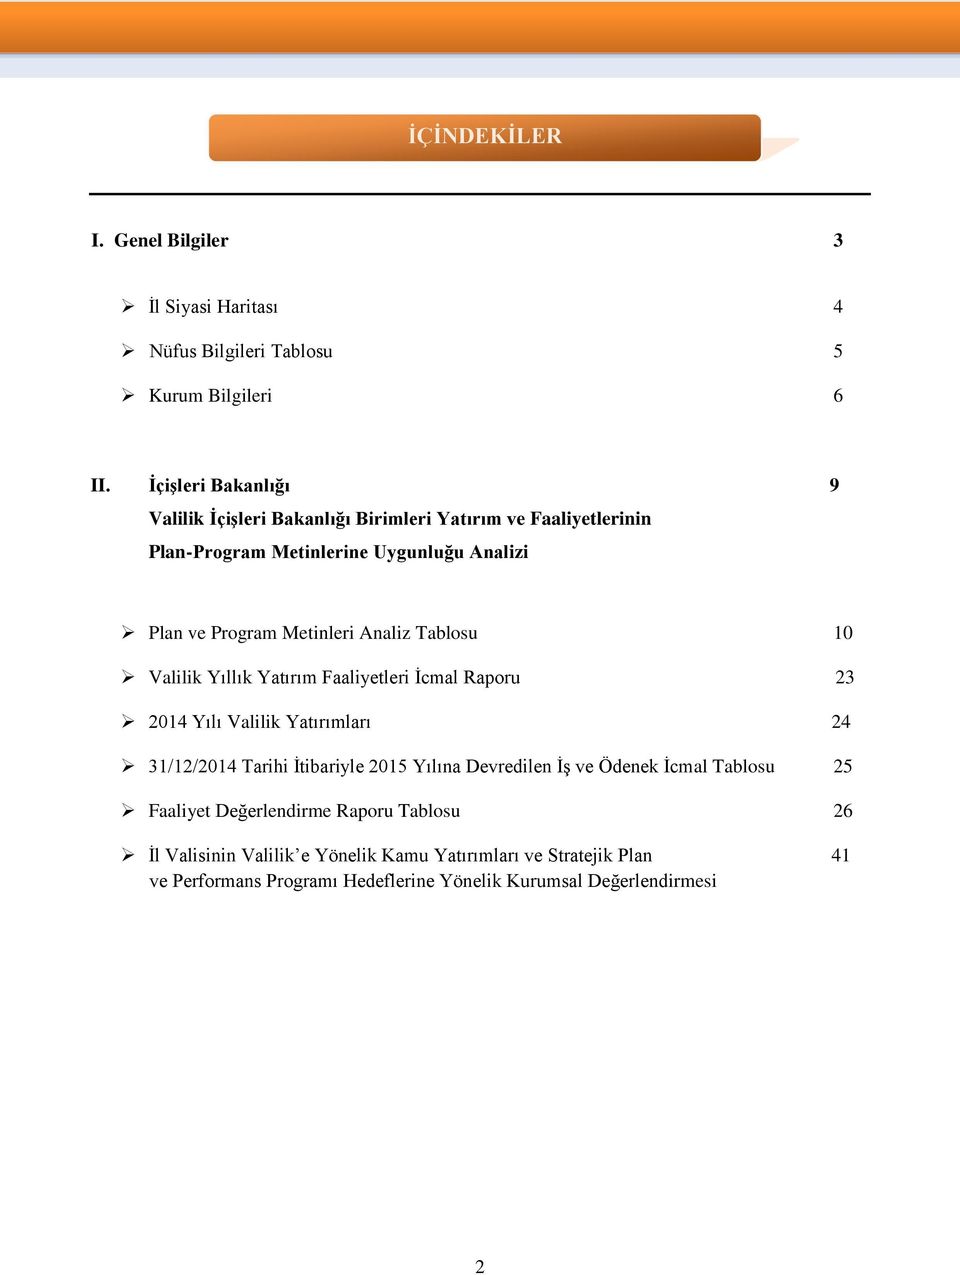 Analiz Tablosu 10 Valilik Yıllık Yatırım Faaliyetleri İcmal Raporu 23 2014 Yılı Valilik Yatırımları 24 31/12/2014 Tarihi İtibariyle 2015 Yılına Devredilen